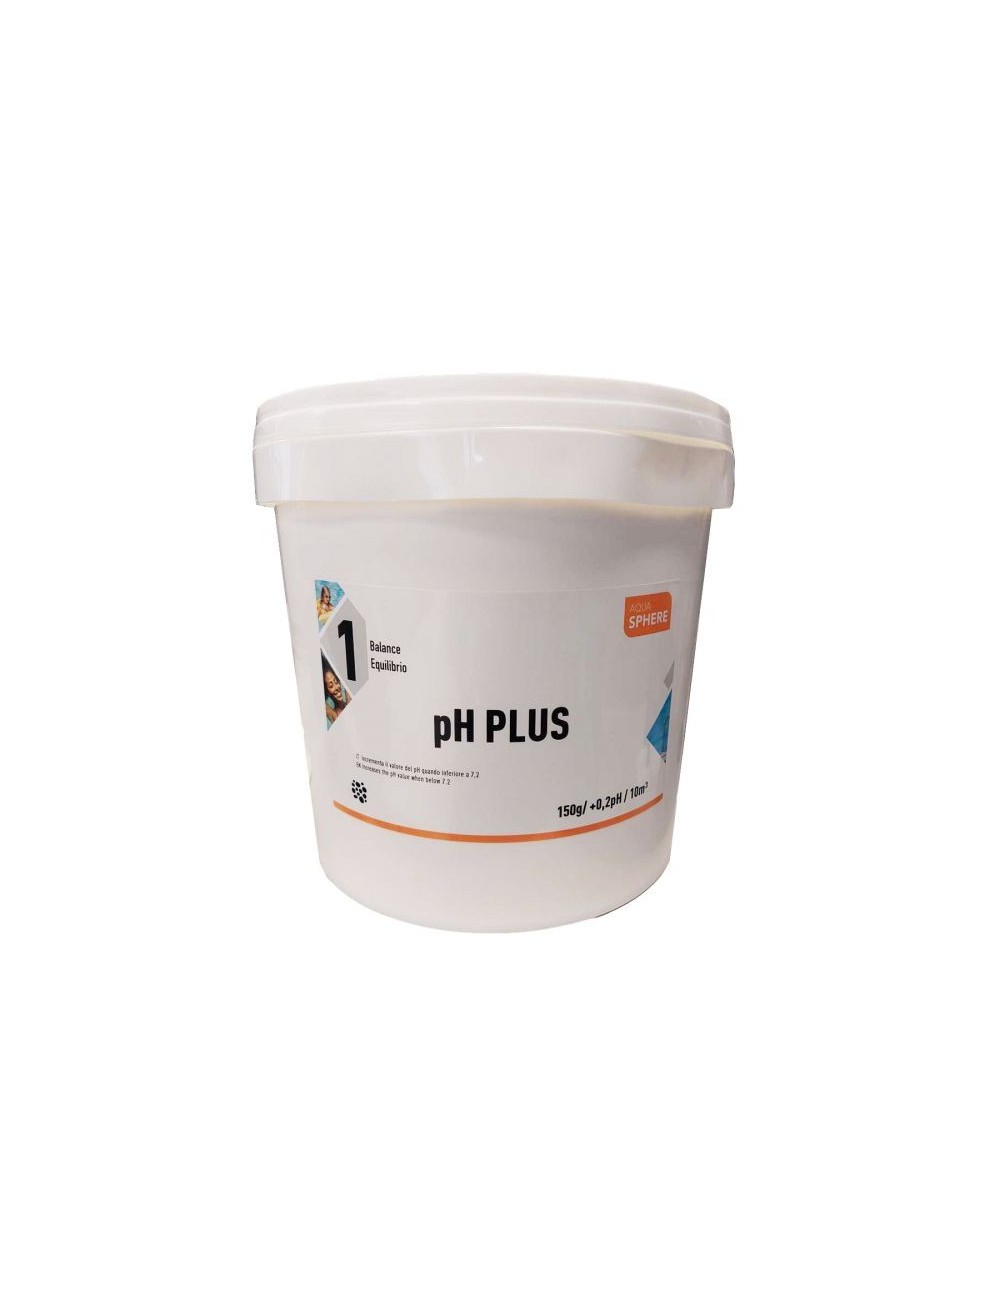 Aqua Sphere PH PLUS 12 kg - Innalzatore granulare per la correzione del pH